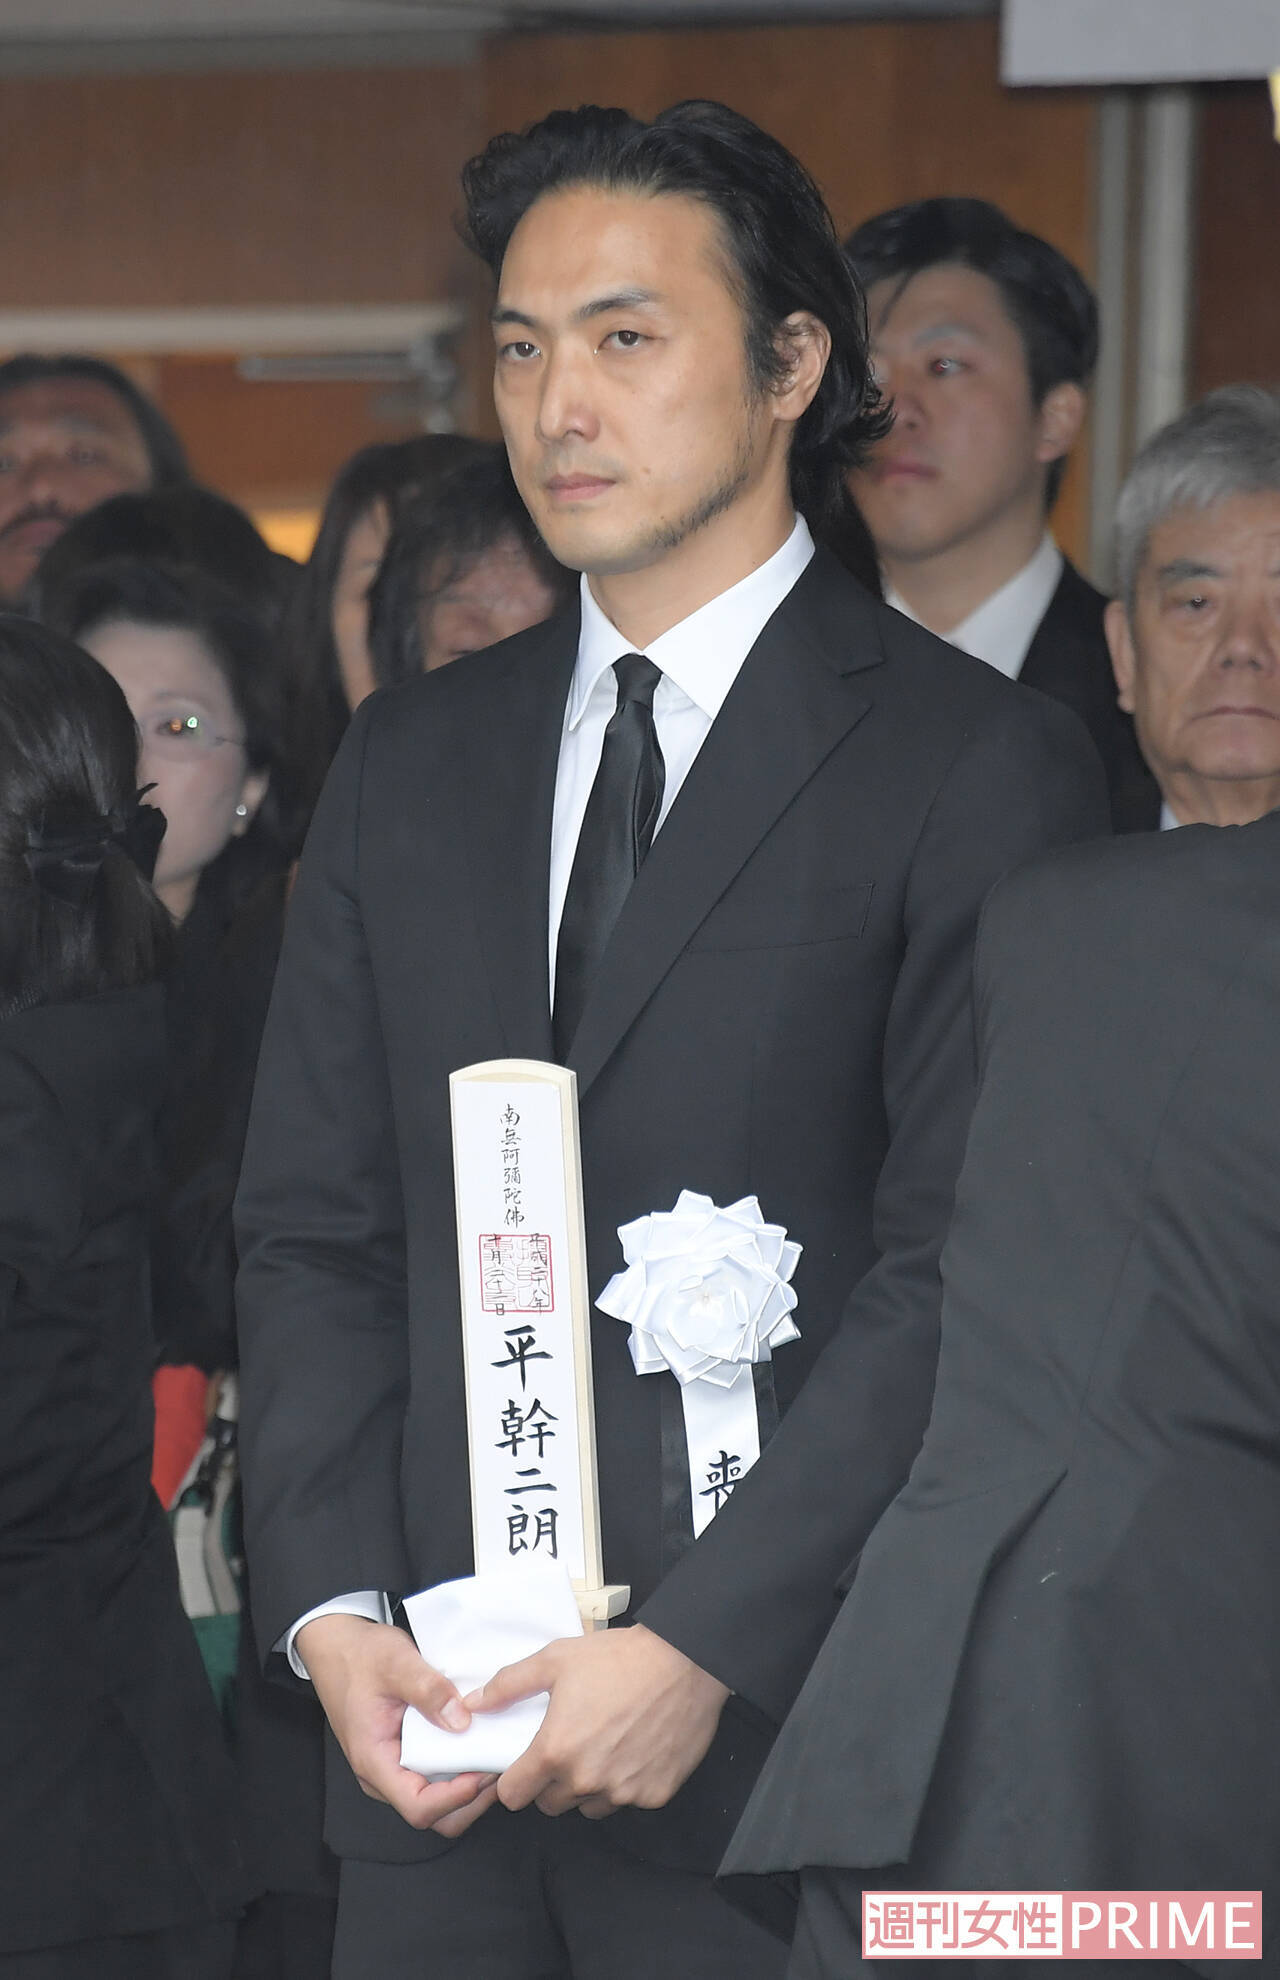 平幹二朗さん 生涯現役 の父が息子 平岳大に伝えていた役者魂とは 16年11月1日 エキサイトニュース 3 4